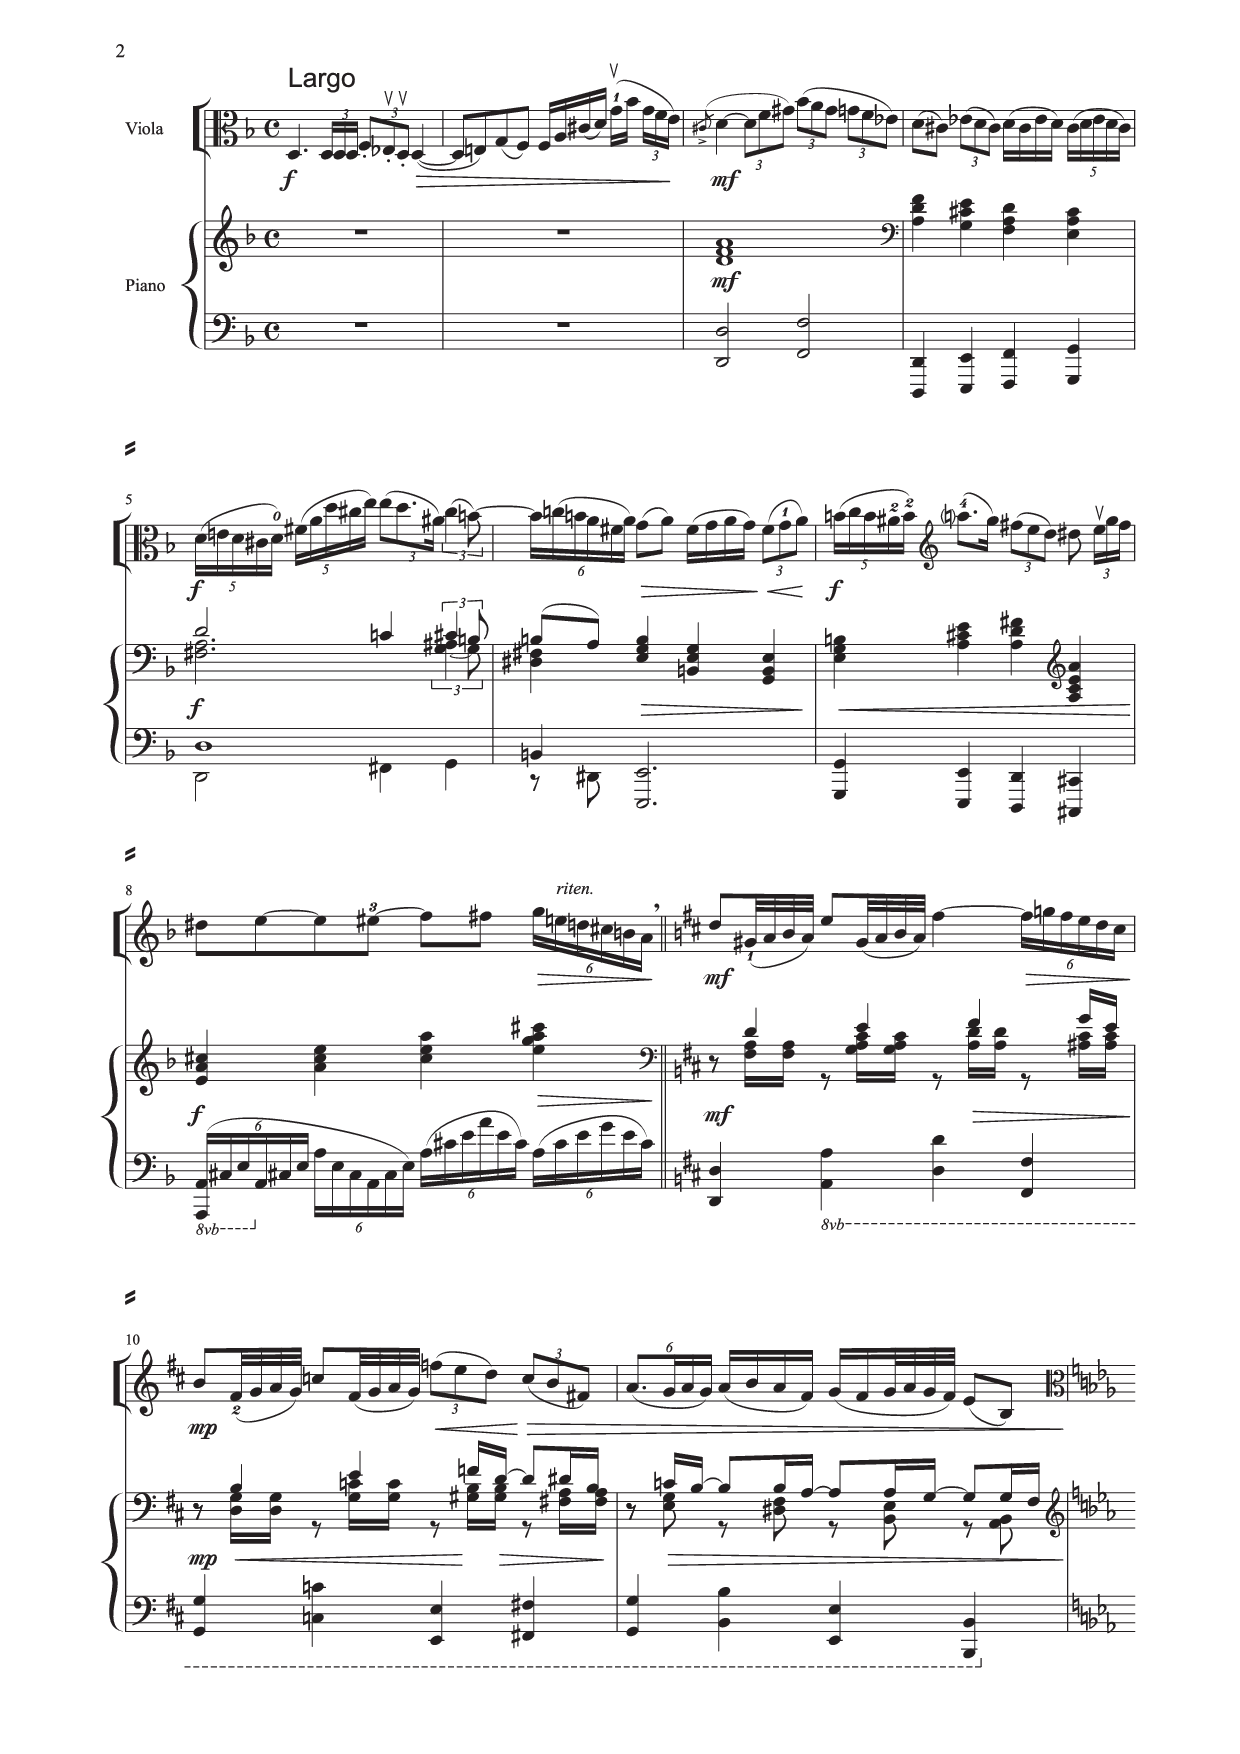 Zsolt Tempfli - Elegie pentru violă şi pian op. 29